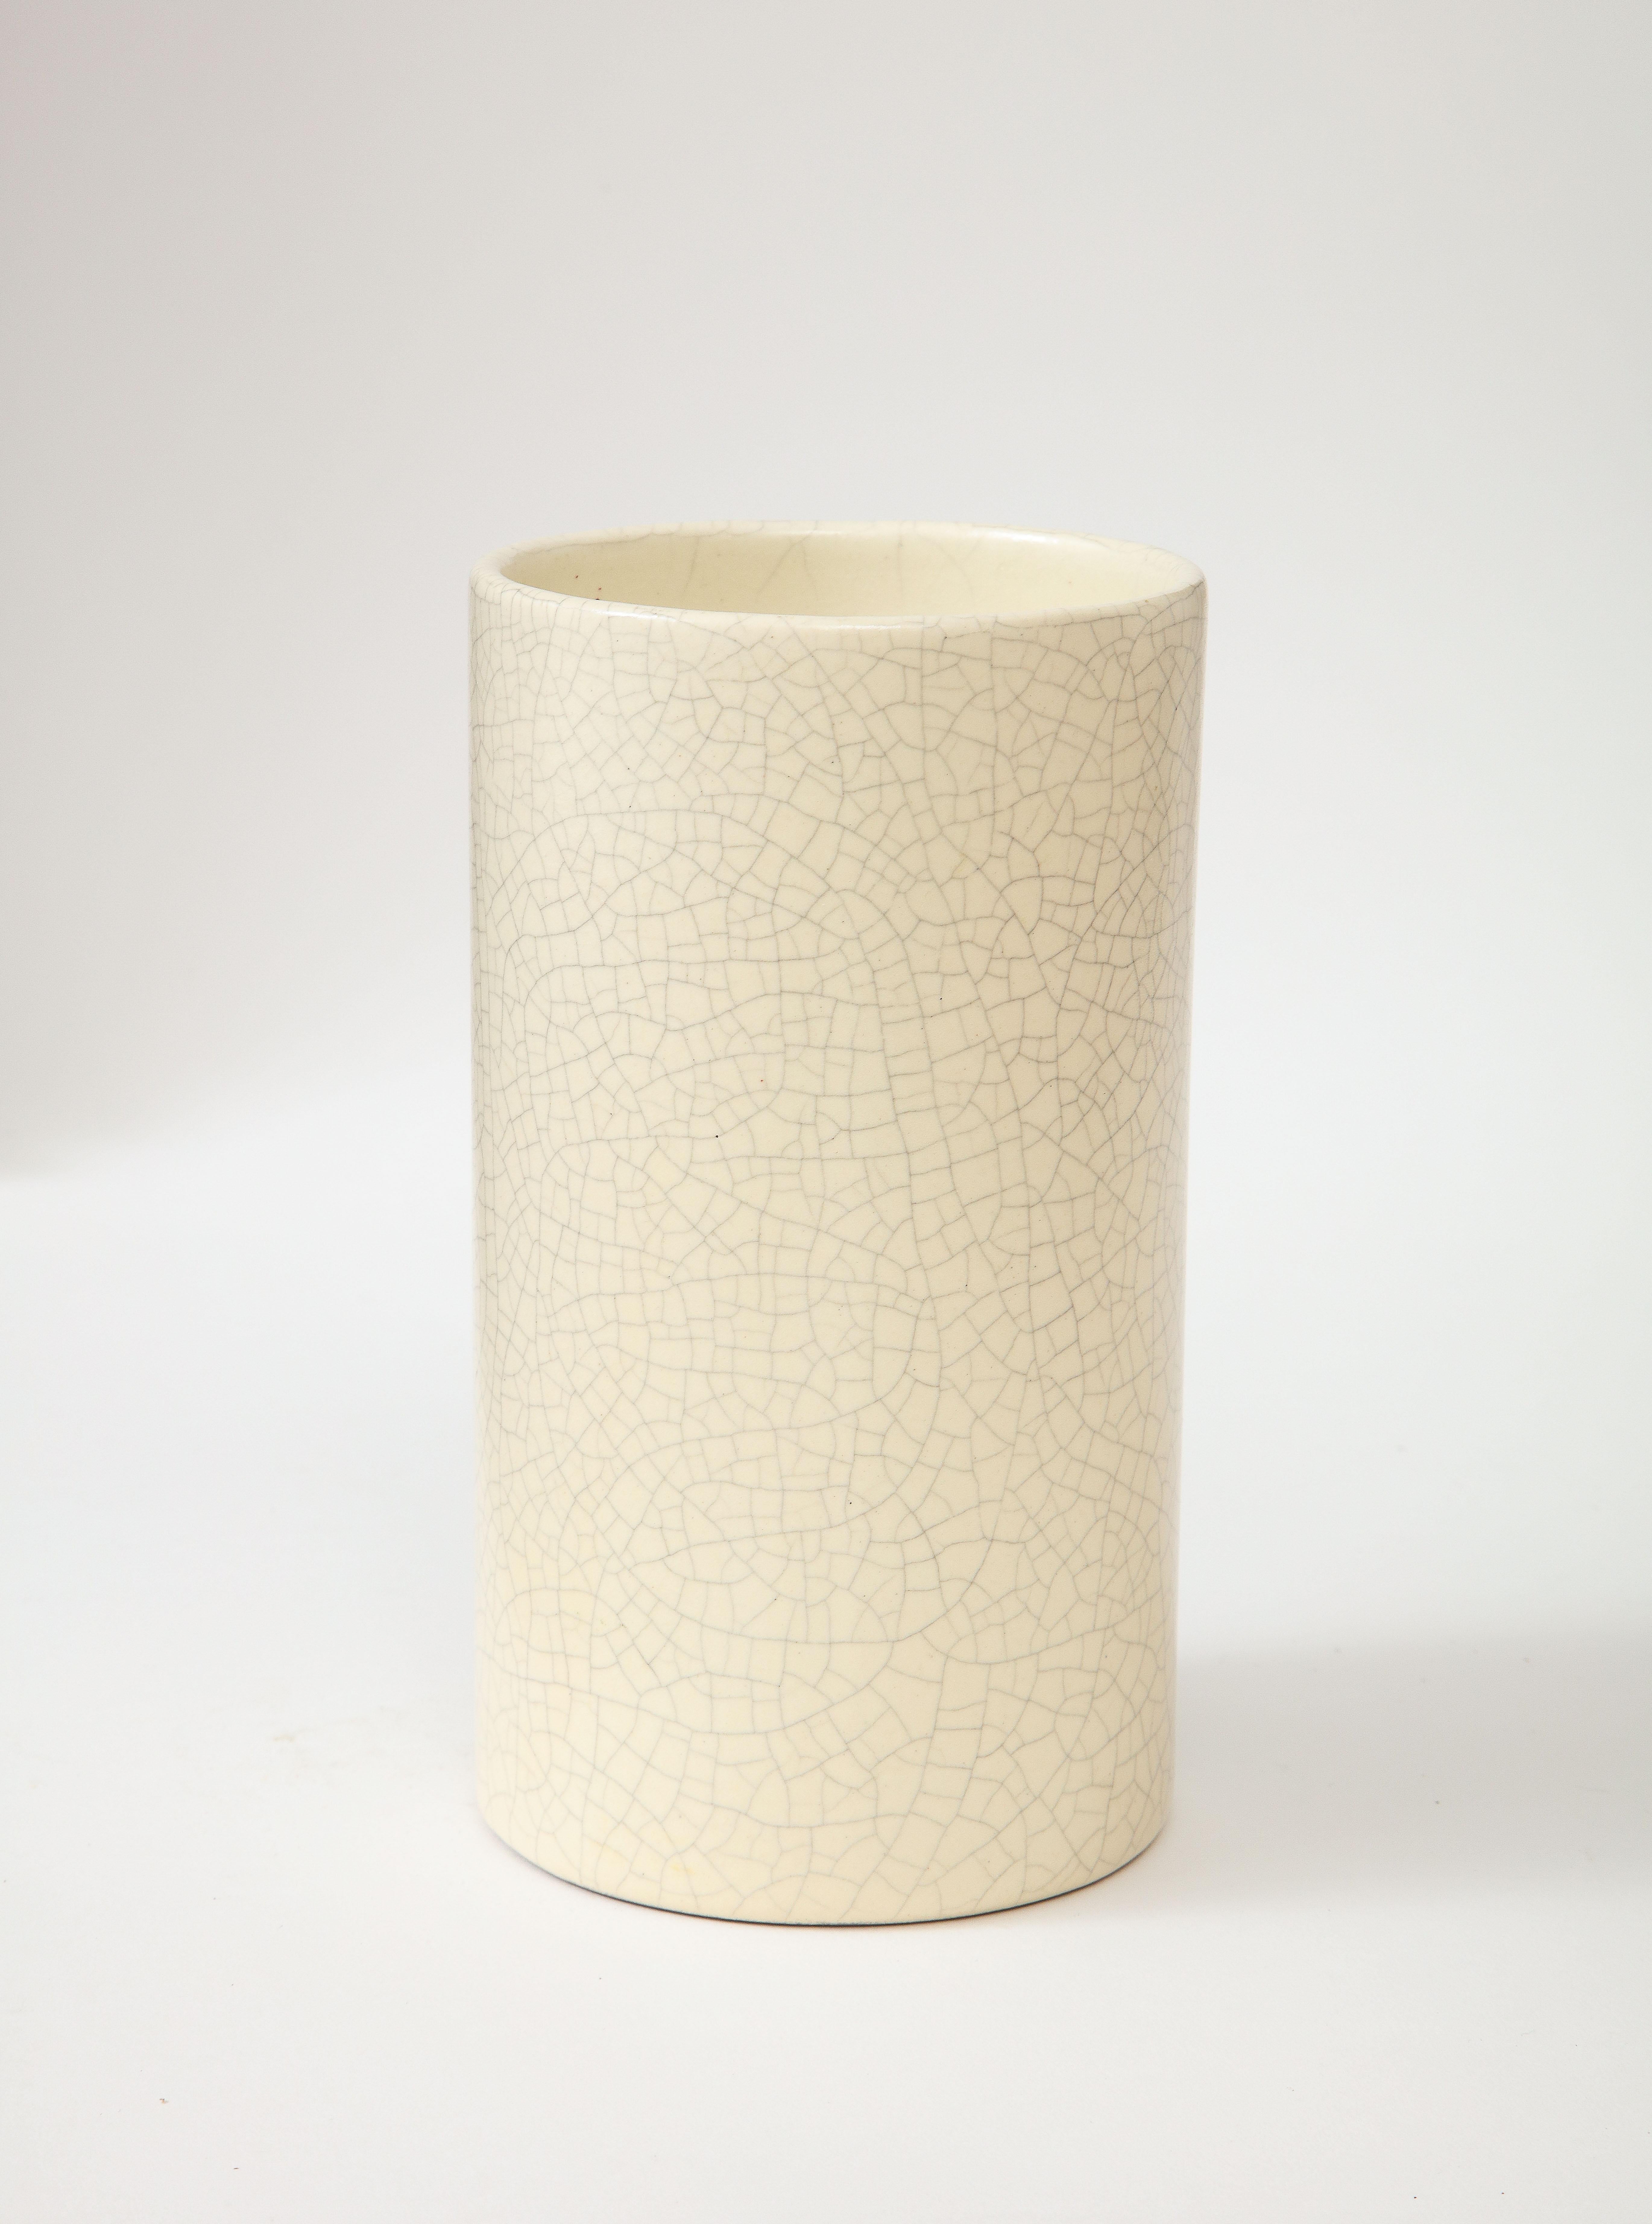 Ceramic Off-White Crackle Vase, France, c. 1960 For Sale